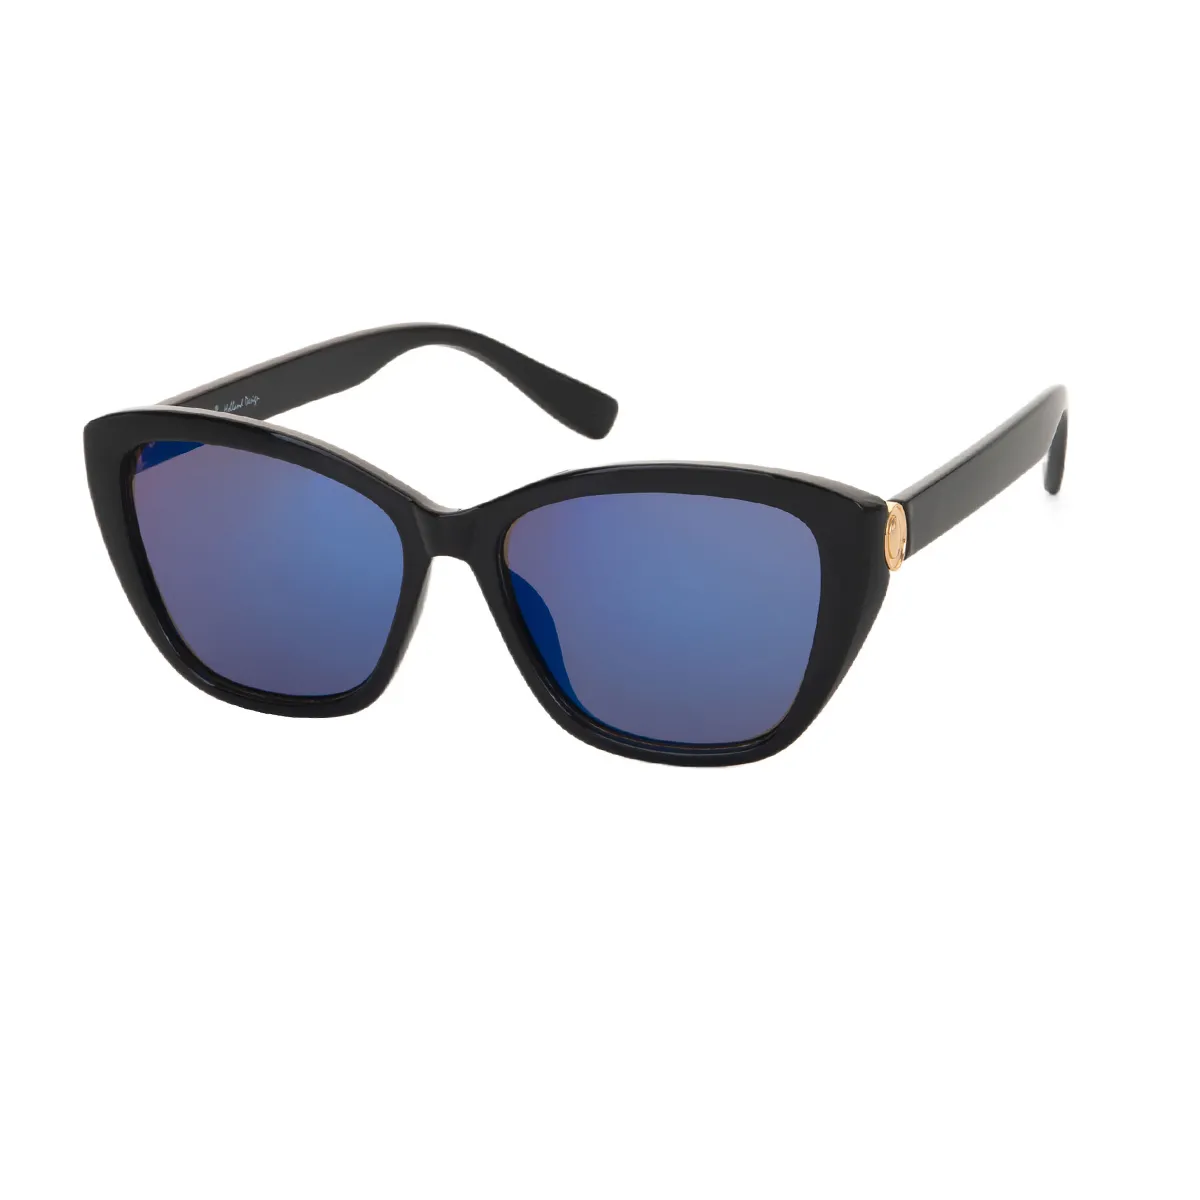 Berry - Cat-eye Black Sunglasses for Women